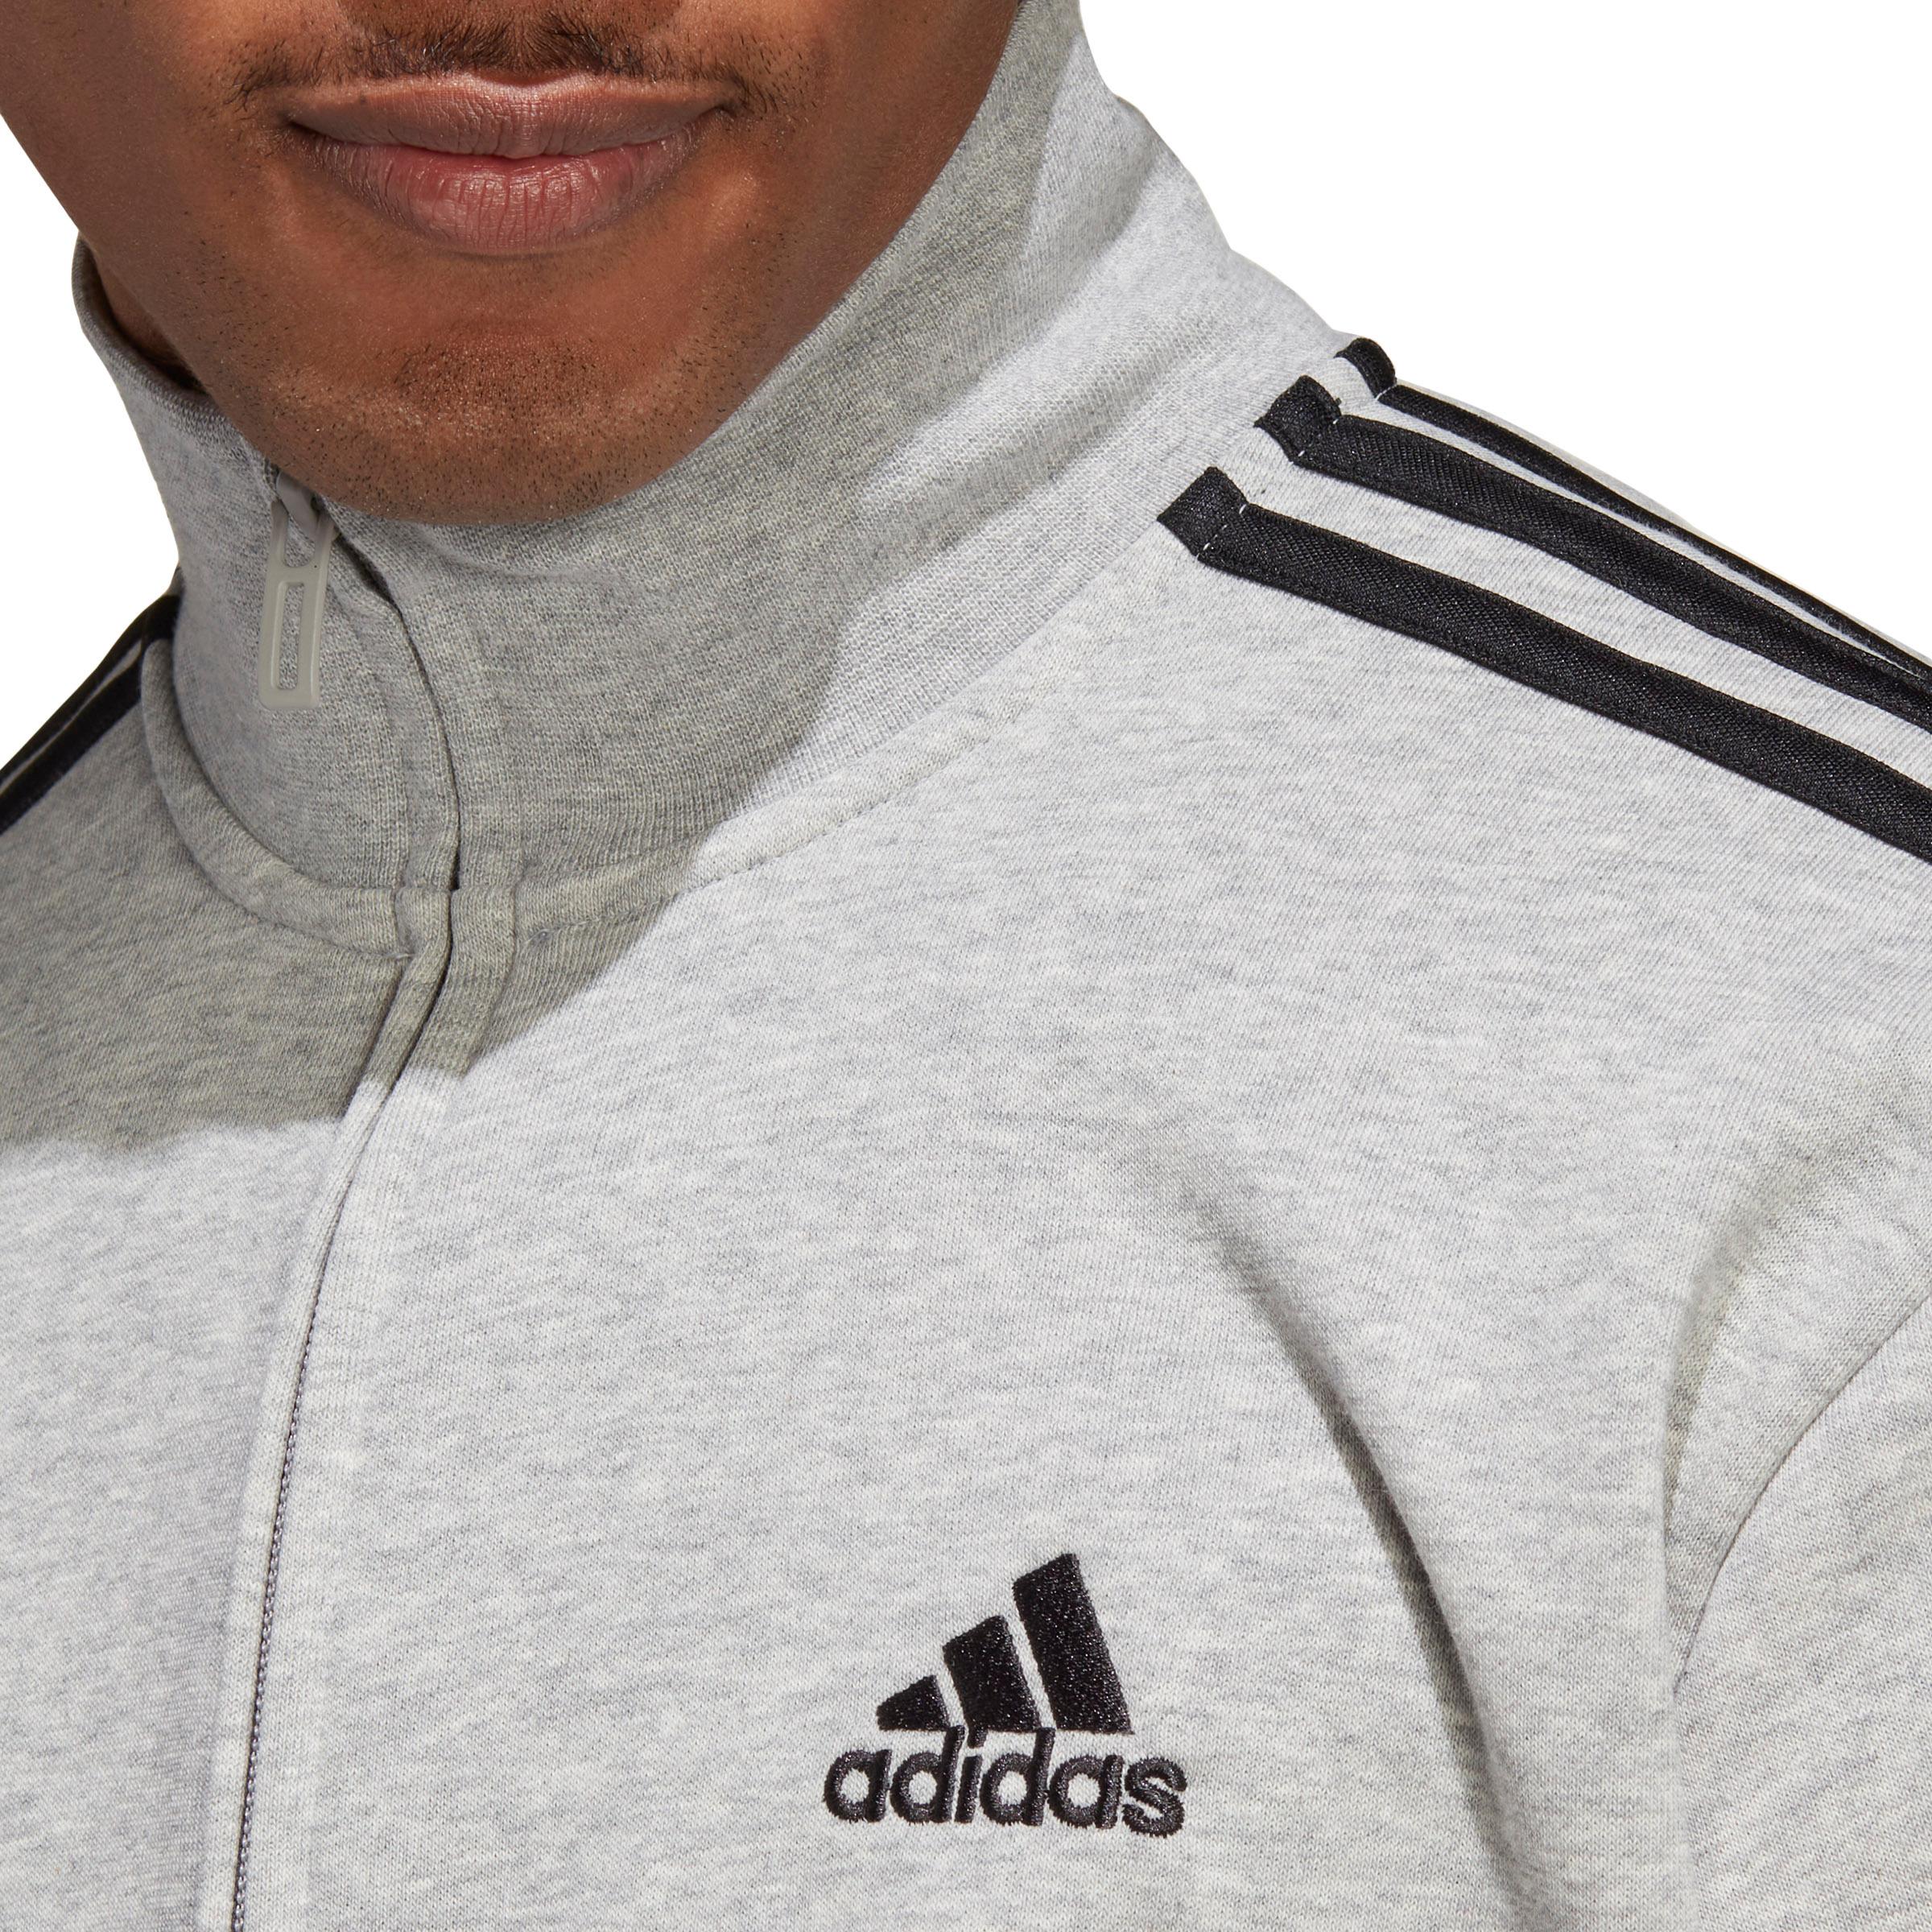 Adidas BASIC 3-STREIFEN FRENCH TERRY SportScheck Shop im medium von grey kaufen Herren Trainingsanzug Online heather-black